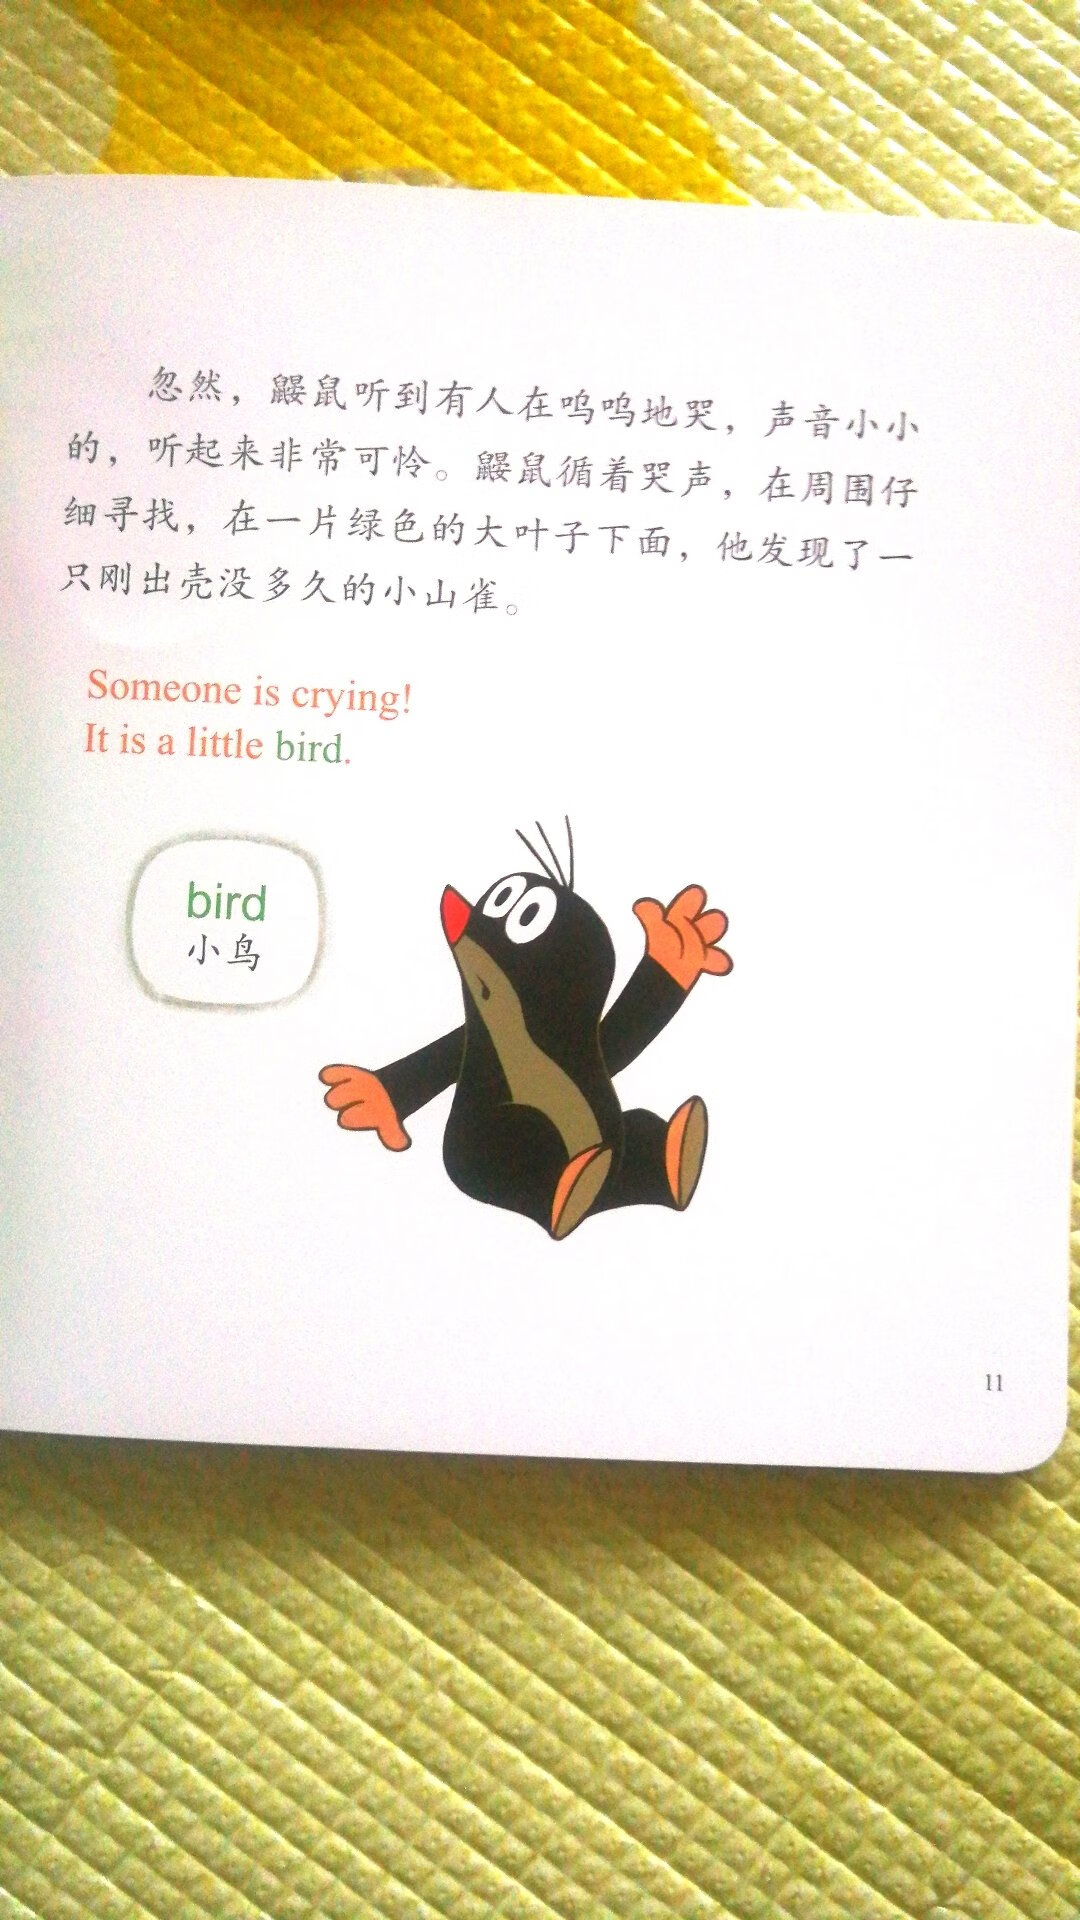 鼹鼠的这套书小朋友很喜欢，有中文有英语，很好的启蒙教材，睡前找一本翻翻，以后回忆起来感觉一定很棒。